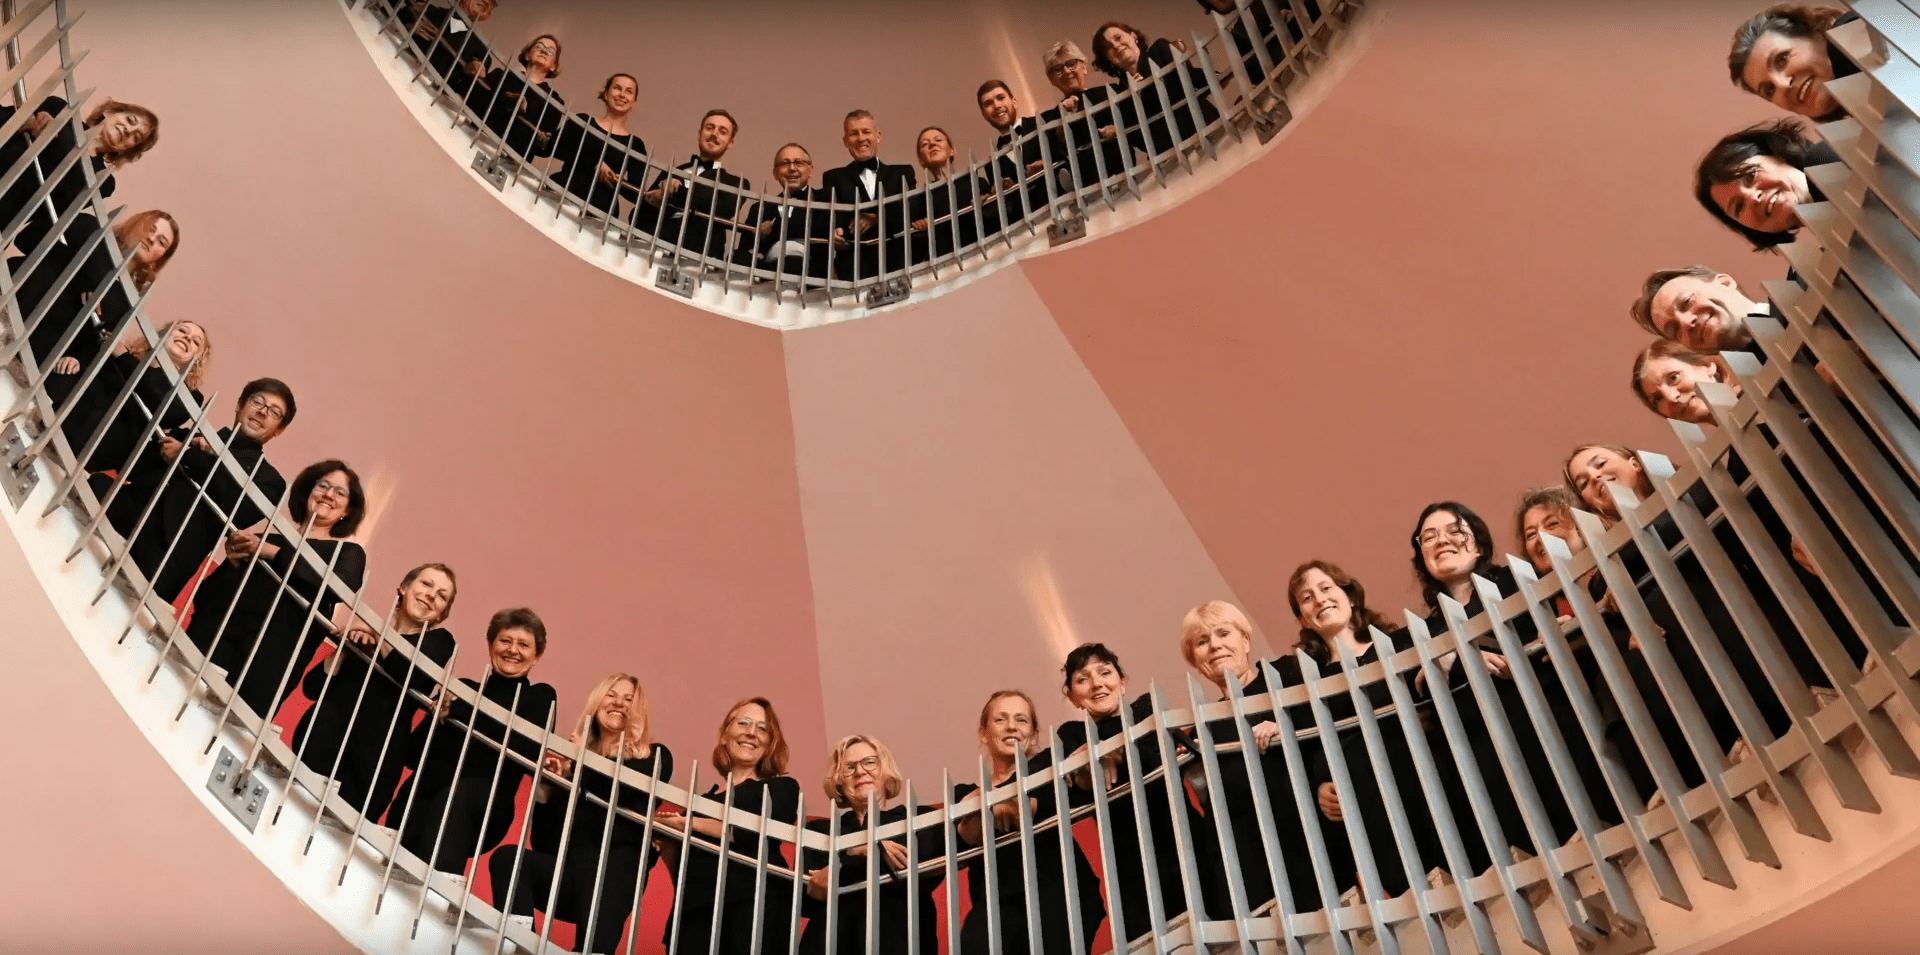 Gruppenbild Sinfonischer Chor auf Treppe